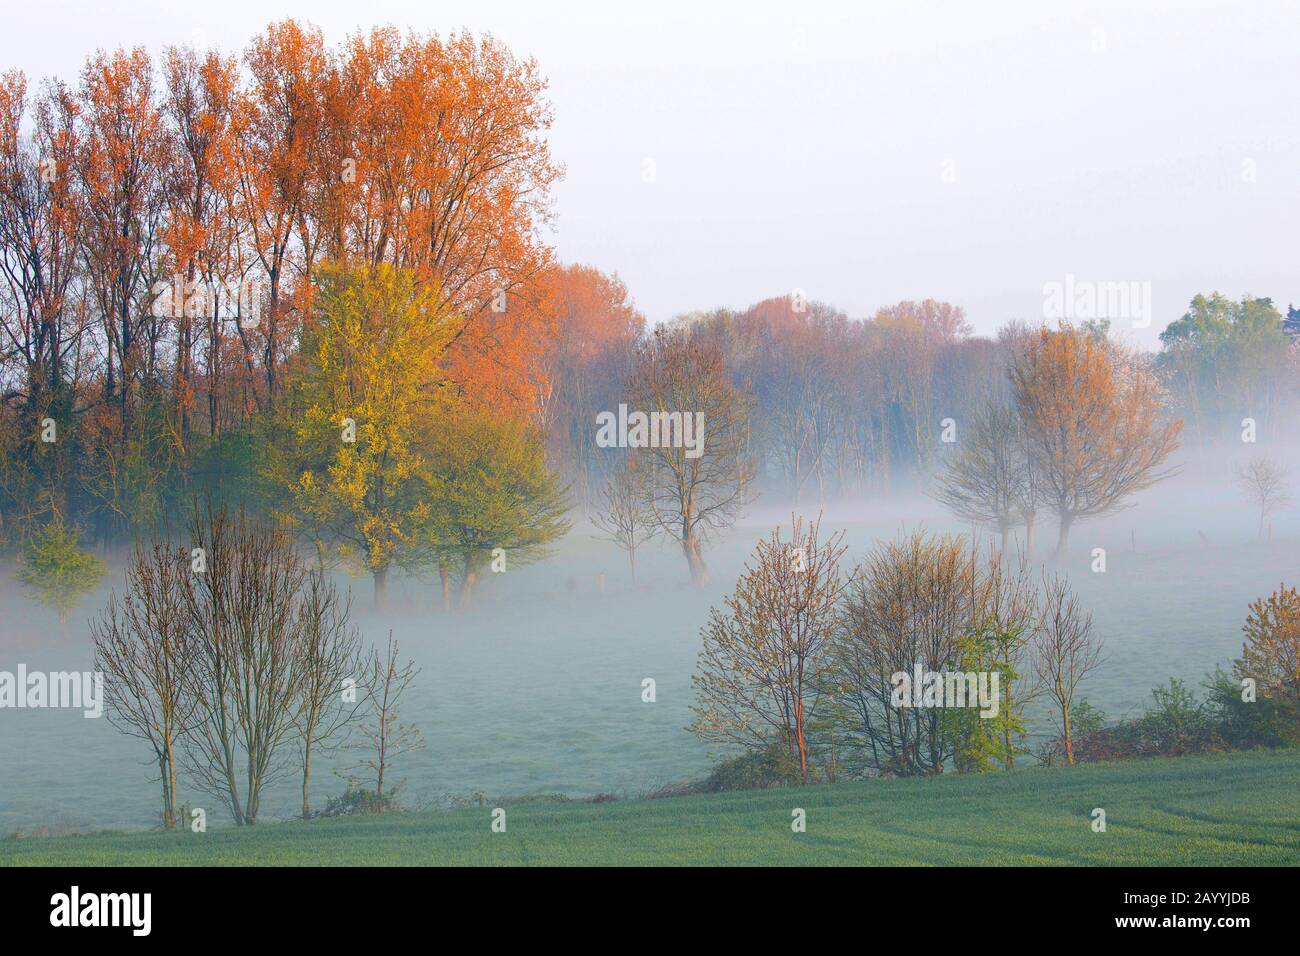 Vlaamse Ardennen in morning mist, Belgium, East Flanders, Burreken, Zegelsem Stock Photo